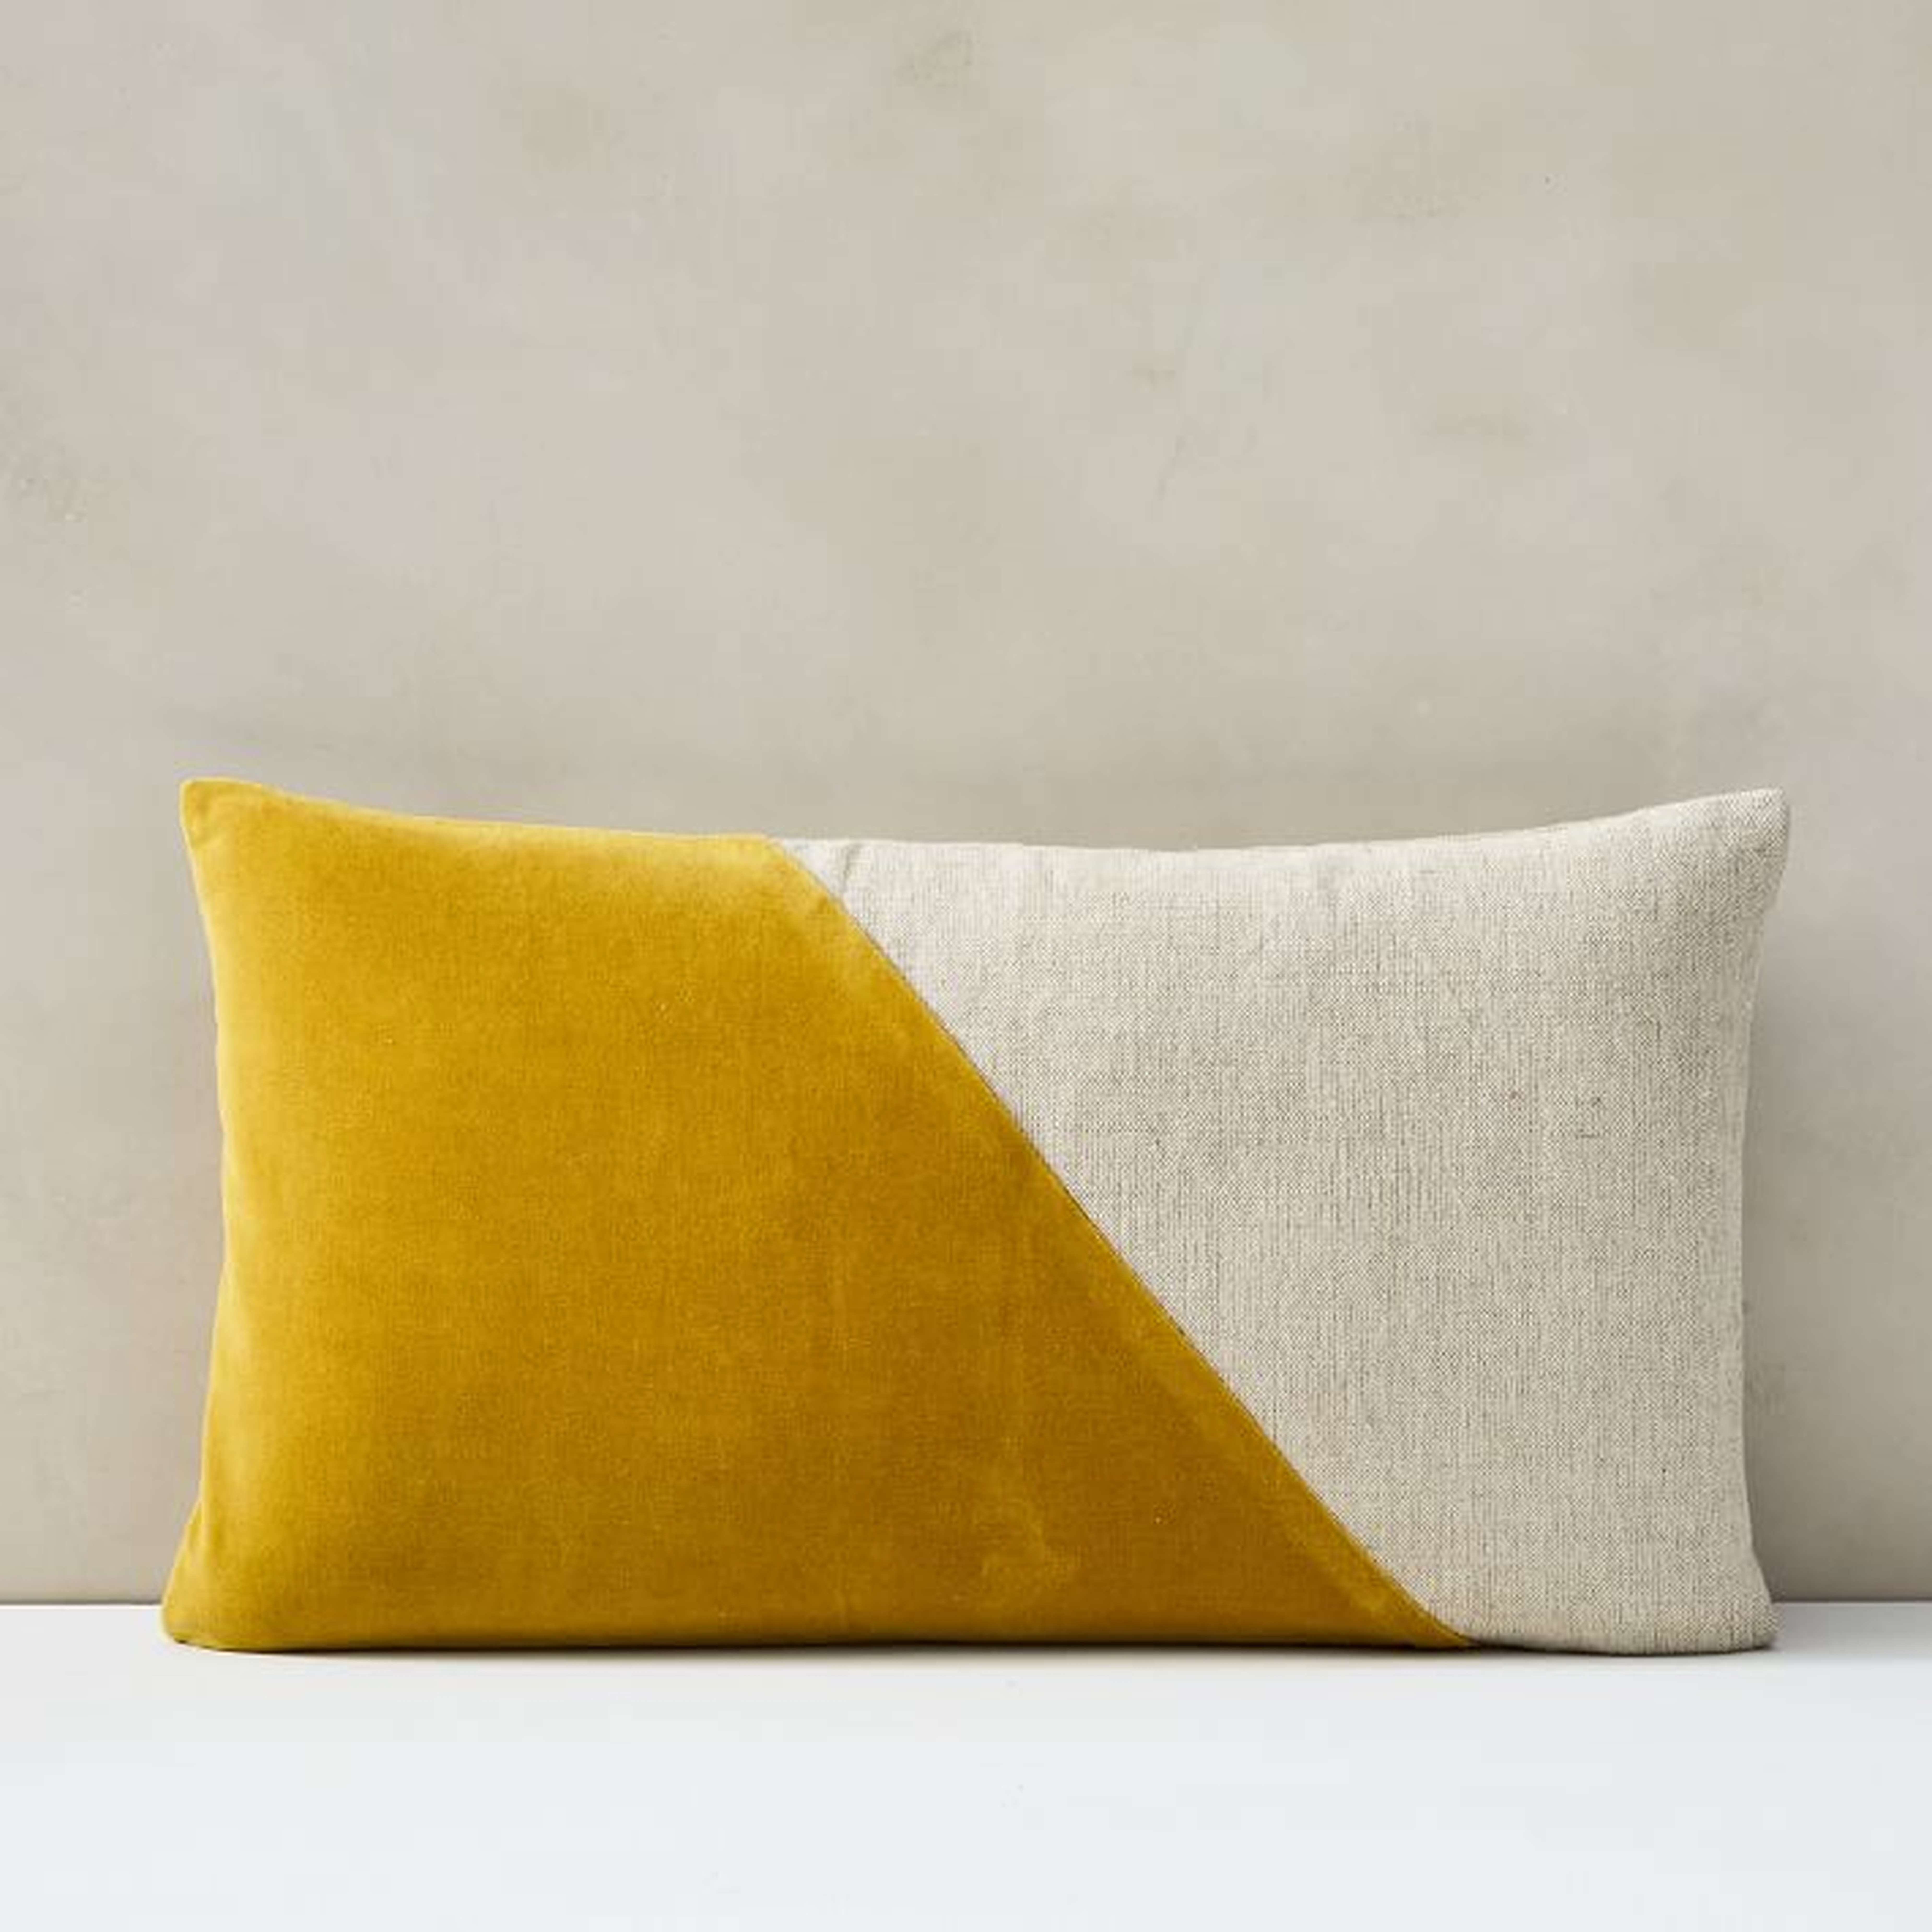 Cotton Linen + Velvet Corners Pillow Cover, 12"x21", Dark Horseradish - West Elm